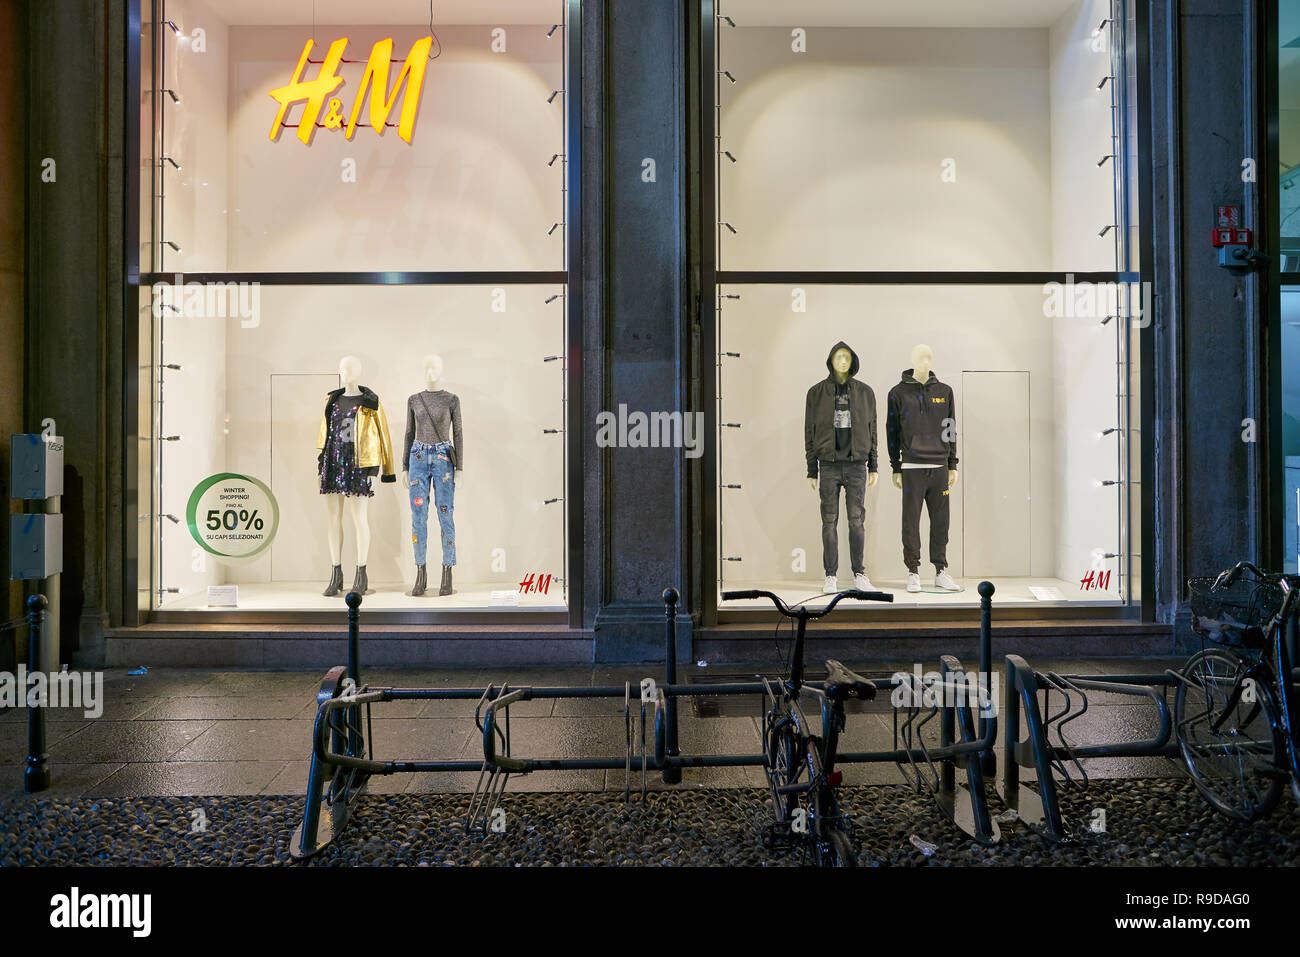 Mailand, Italien - ca. November 2017: Schaufenster Anzeige der Kleidung bei  H&M Store in Mailand, Italien Stockfotografie - Alamy